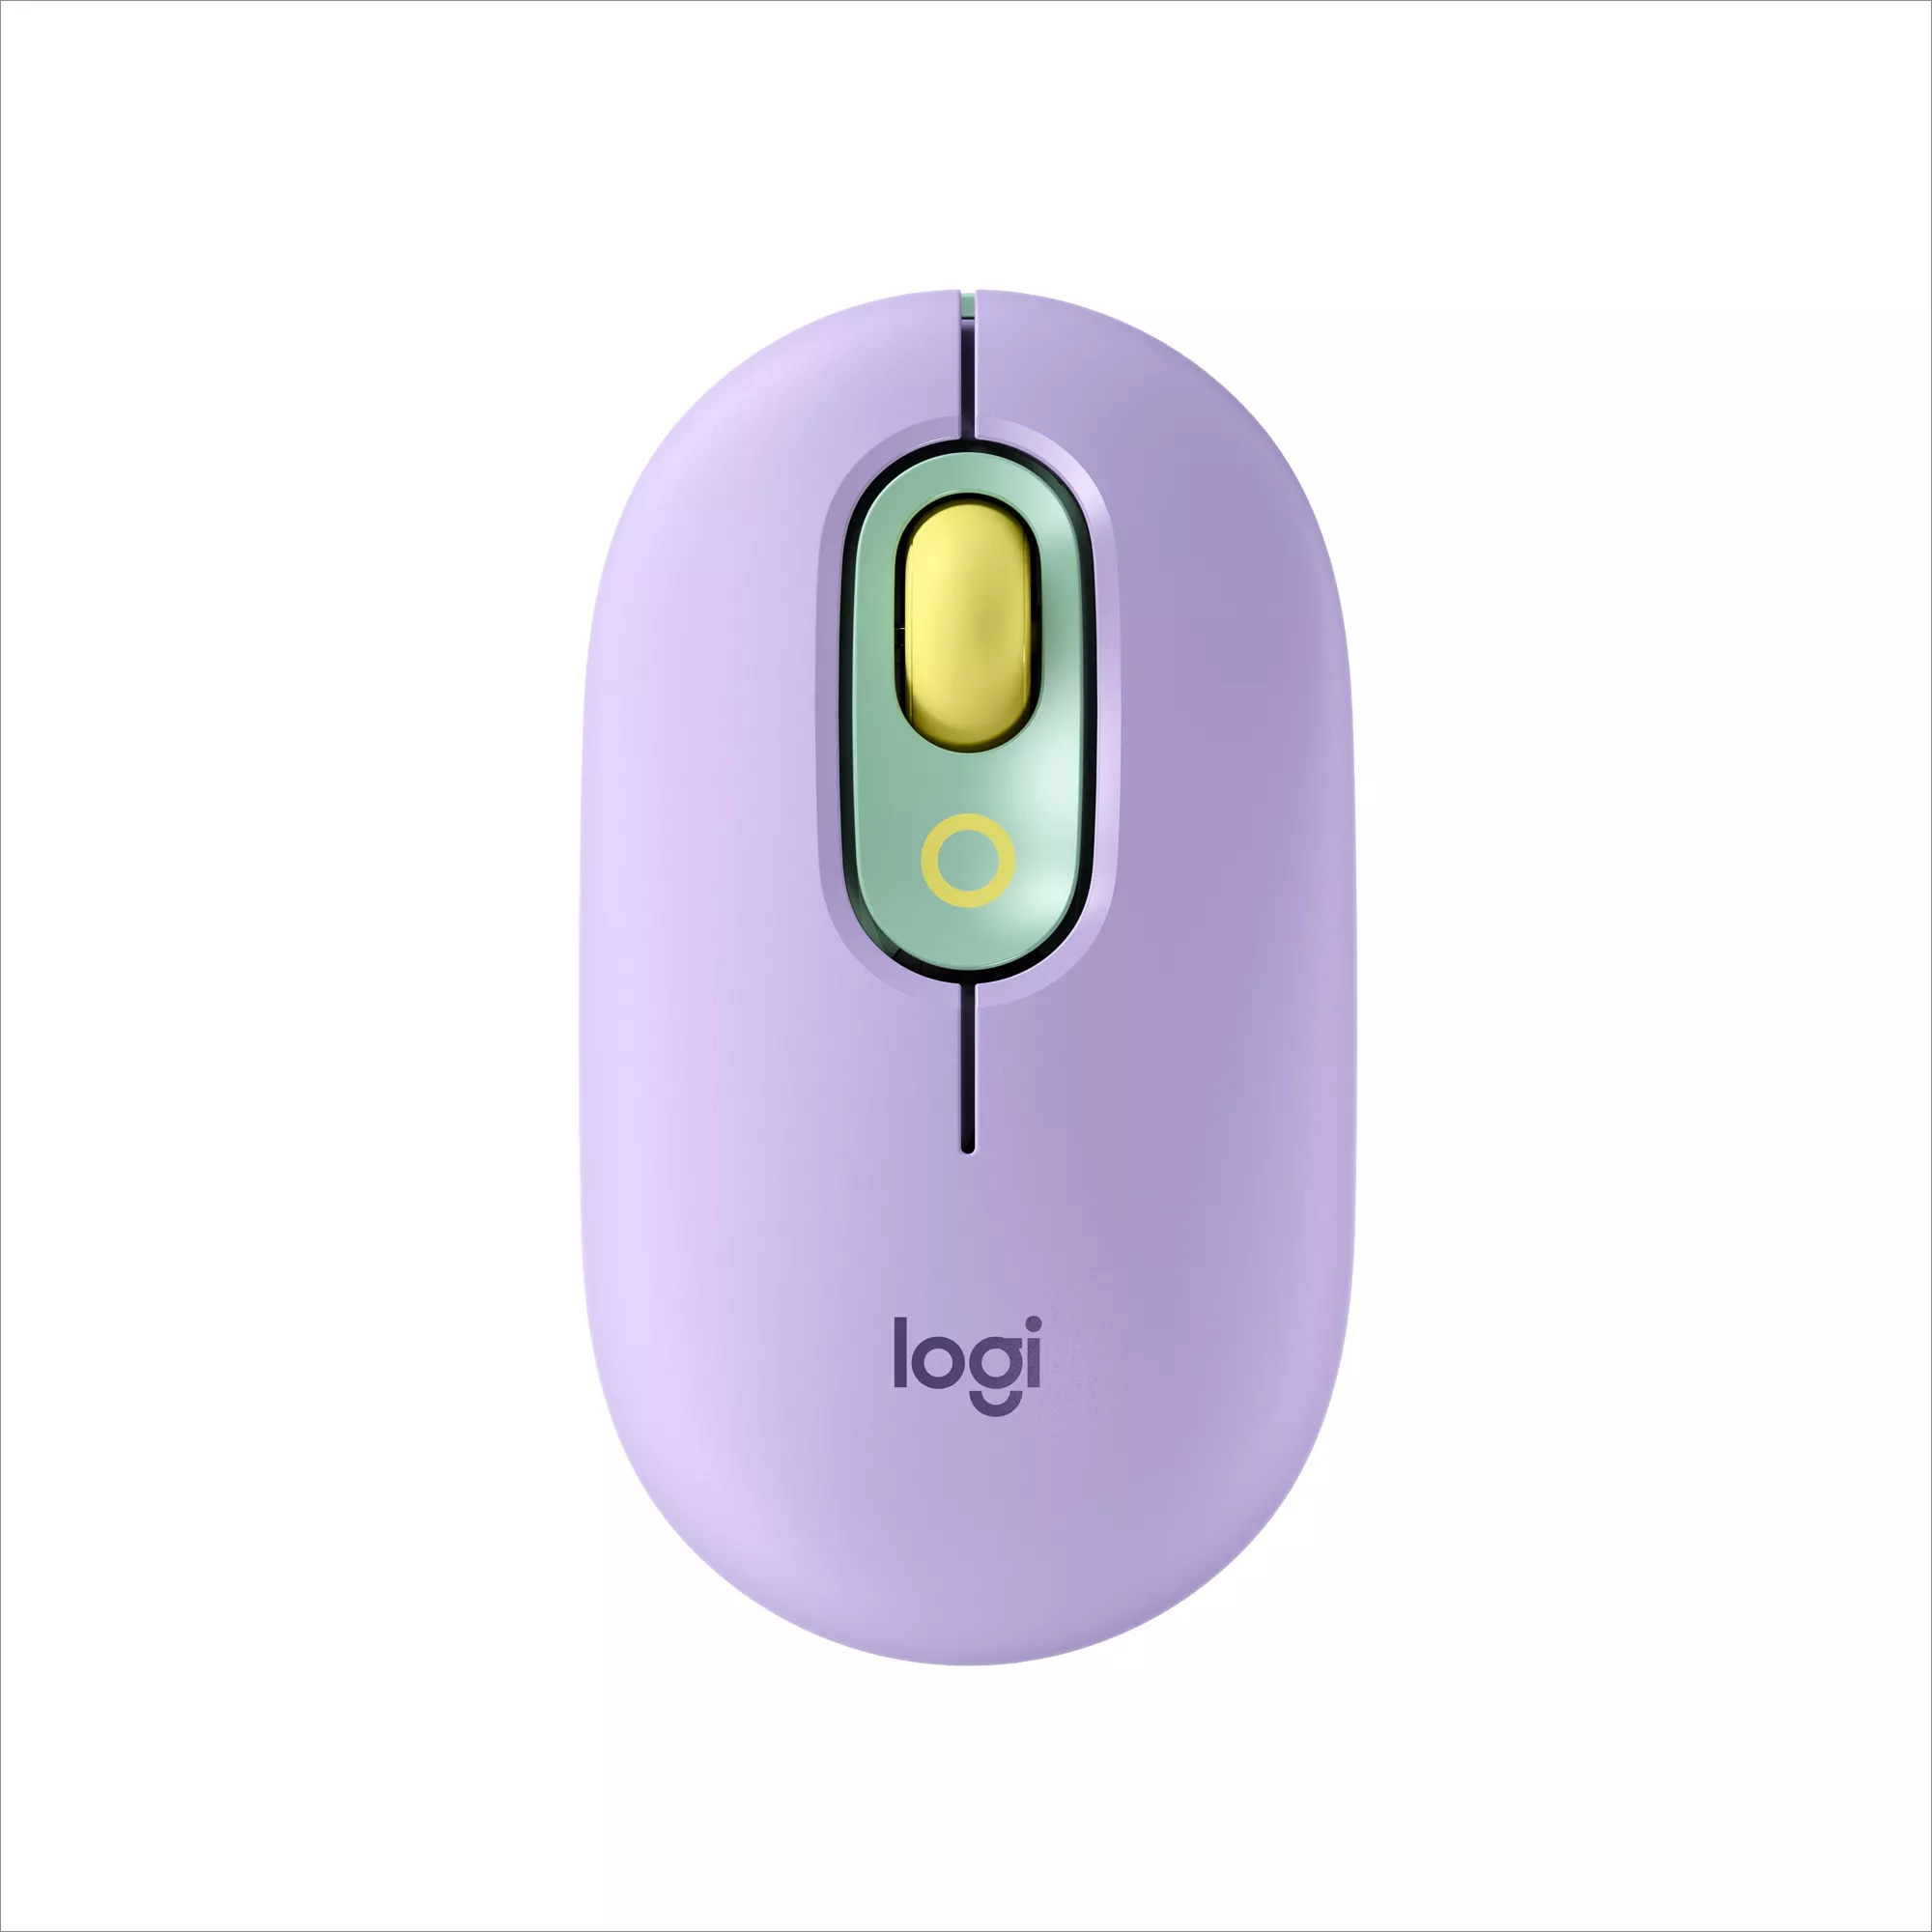 Achat LOGITECH POP Mouse customisable emoji optical 4 buttons et autres produits de la marque Logitech